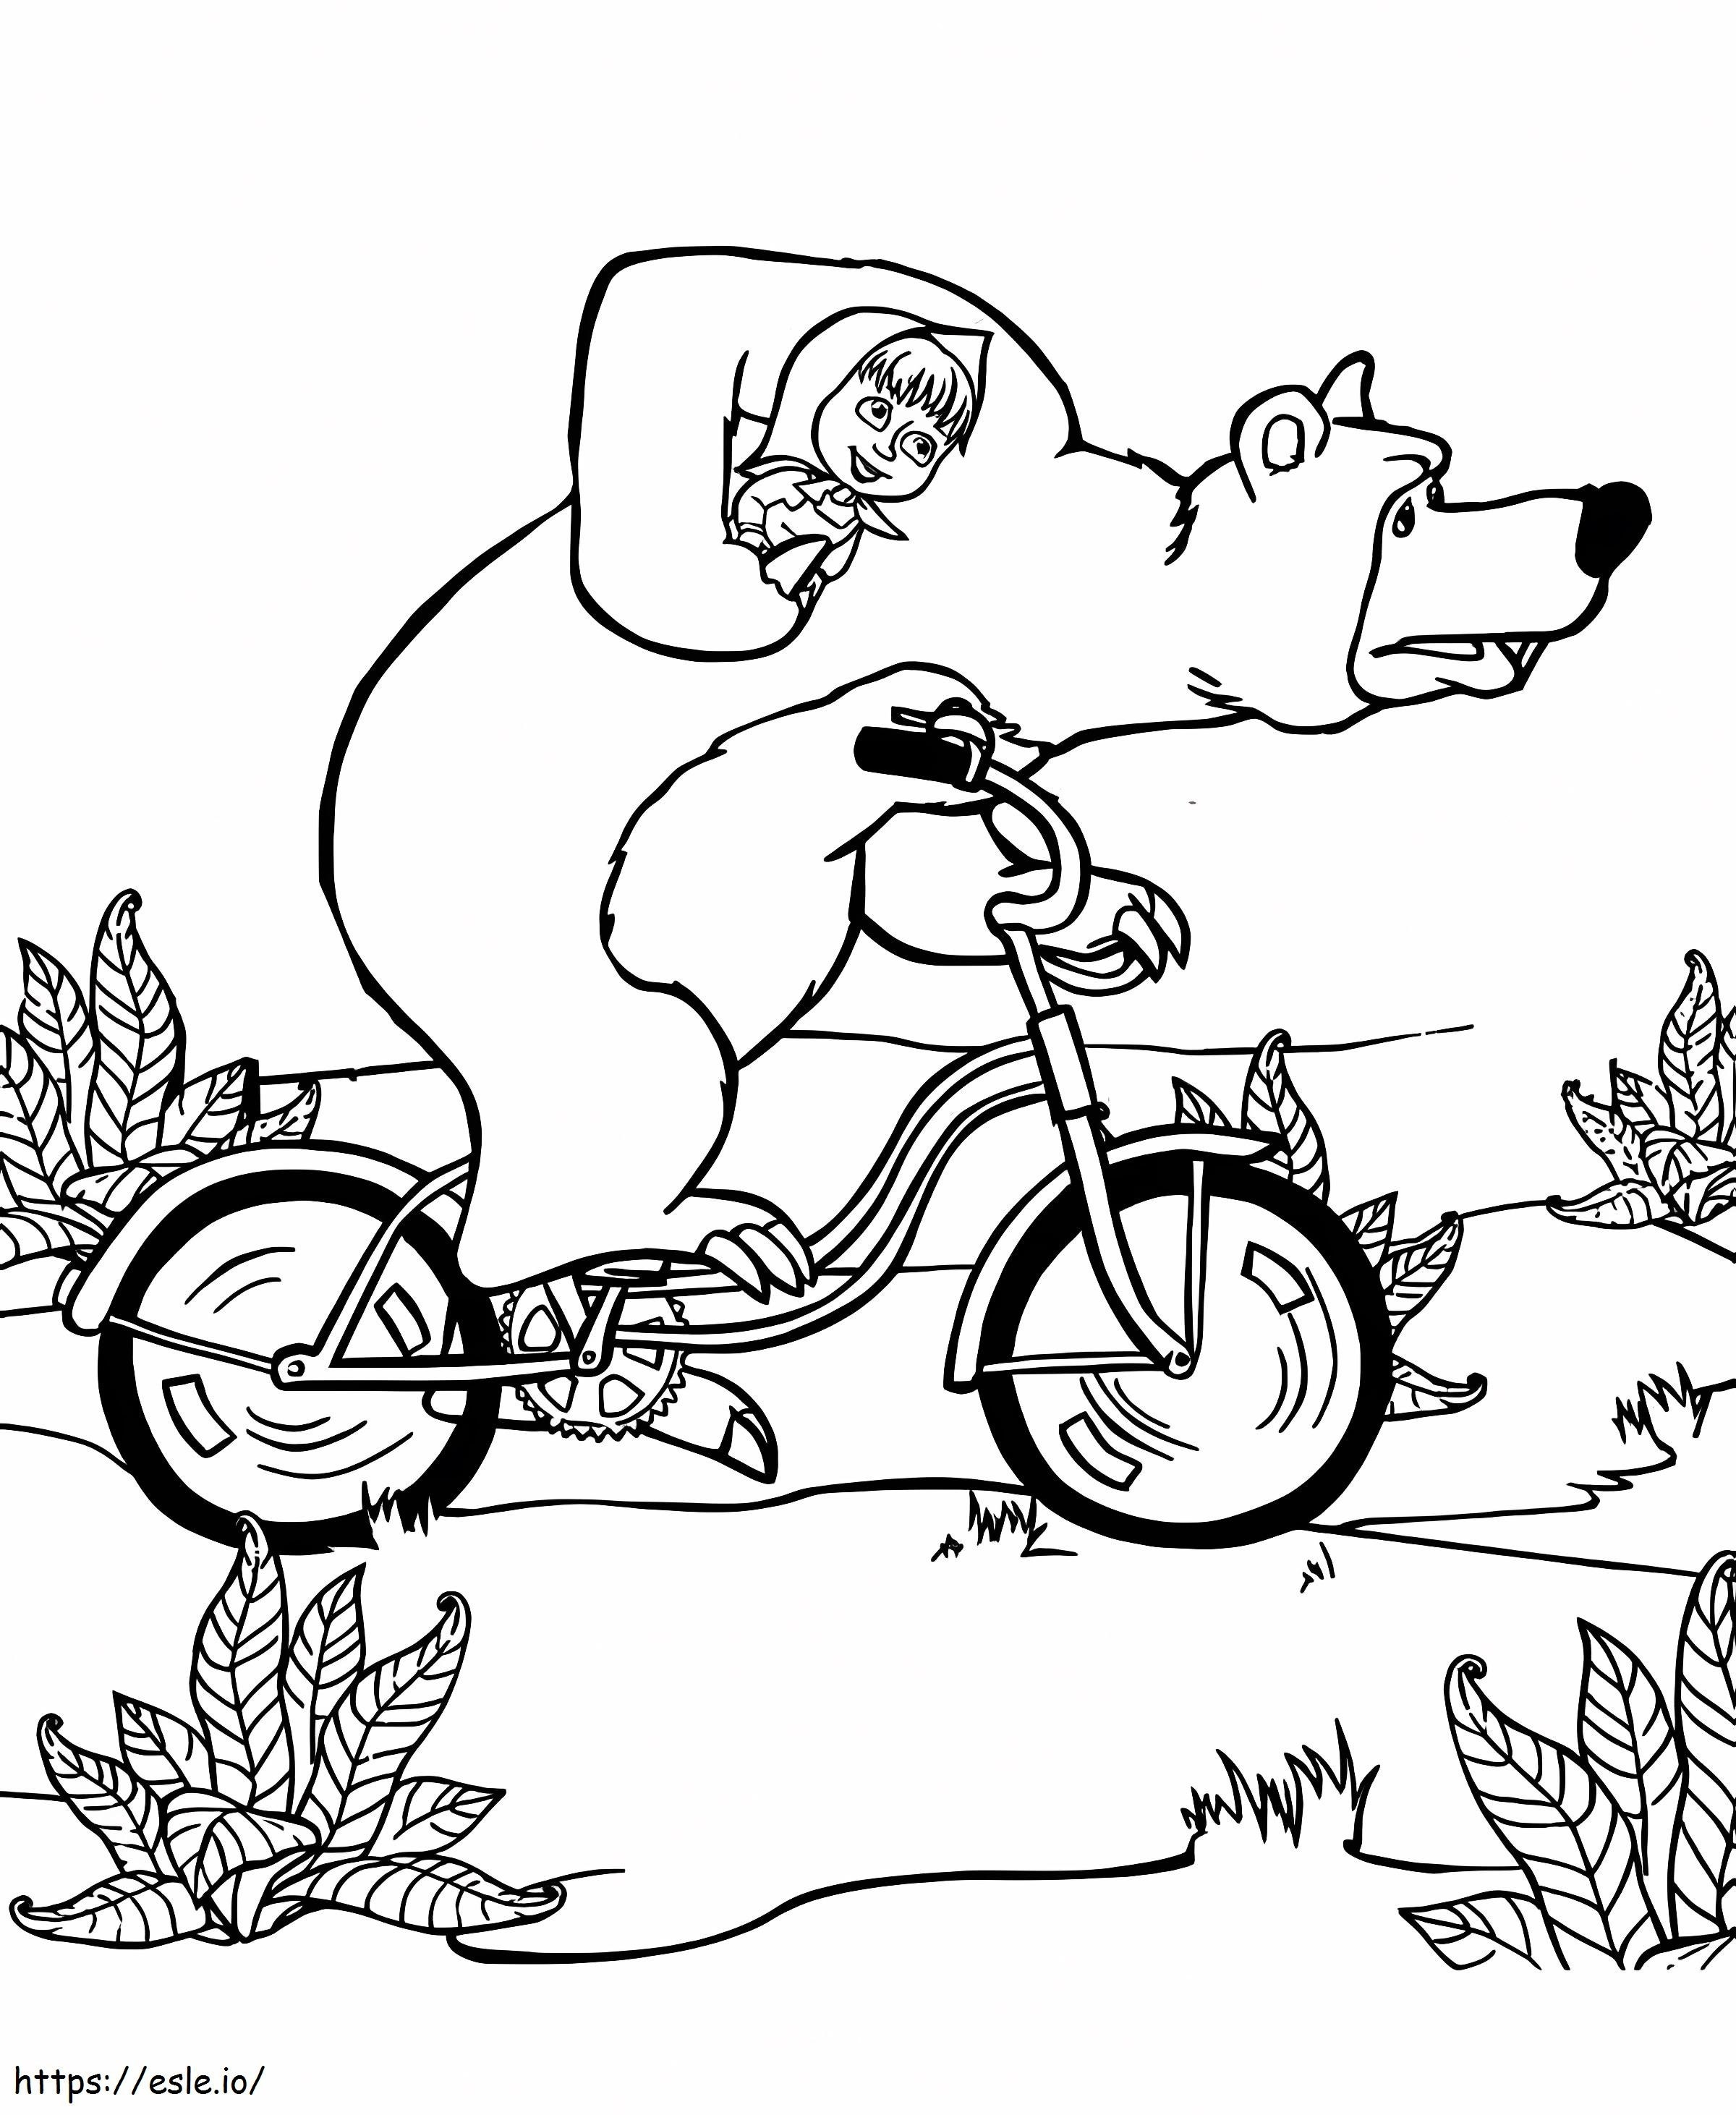 Mascha fährt Fahrrad mit Bär zum Ausmalen ausmalbilder